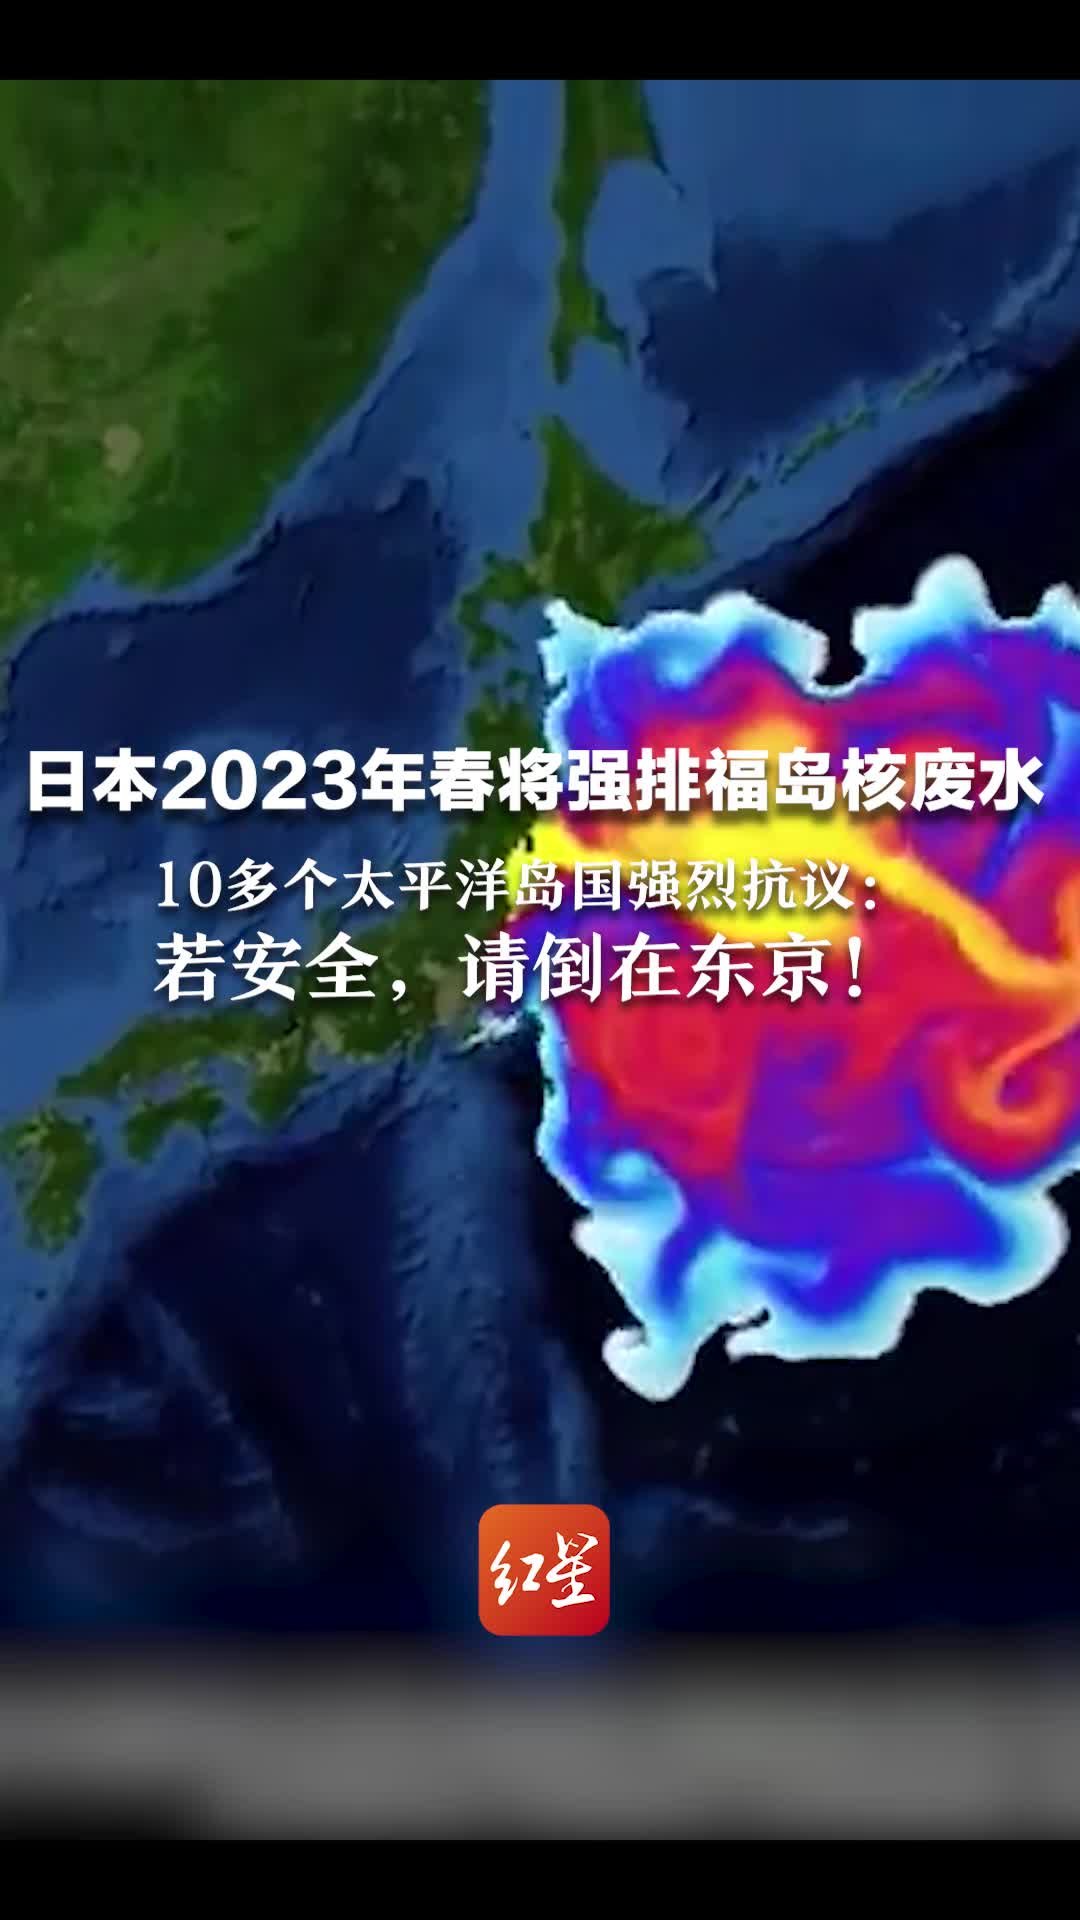 日本2023年春将强排福岛核废水10多个太平洋岛国强烈抗议若安全请倒在